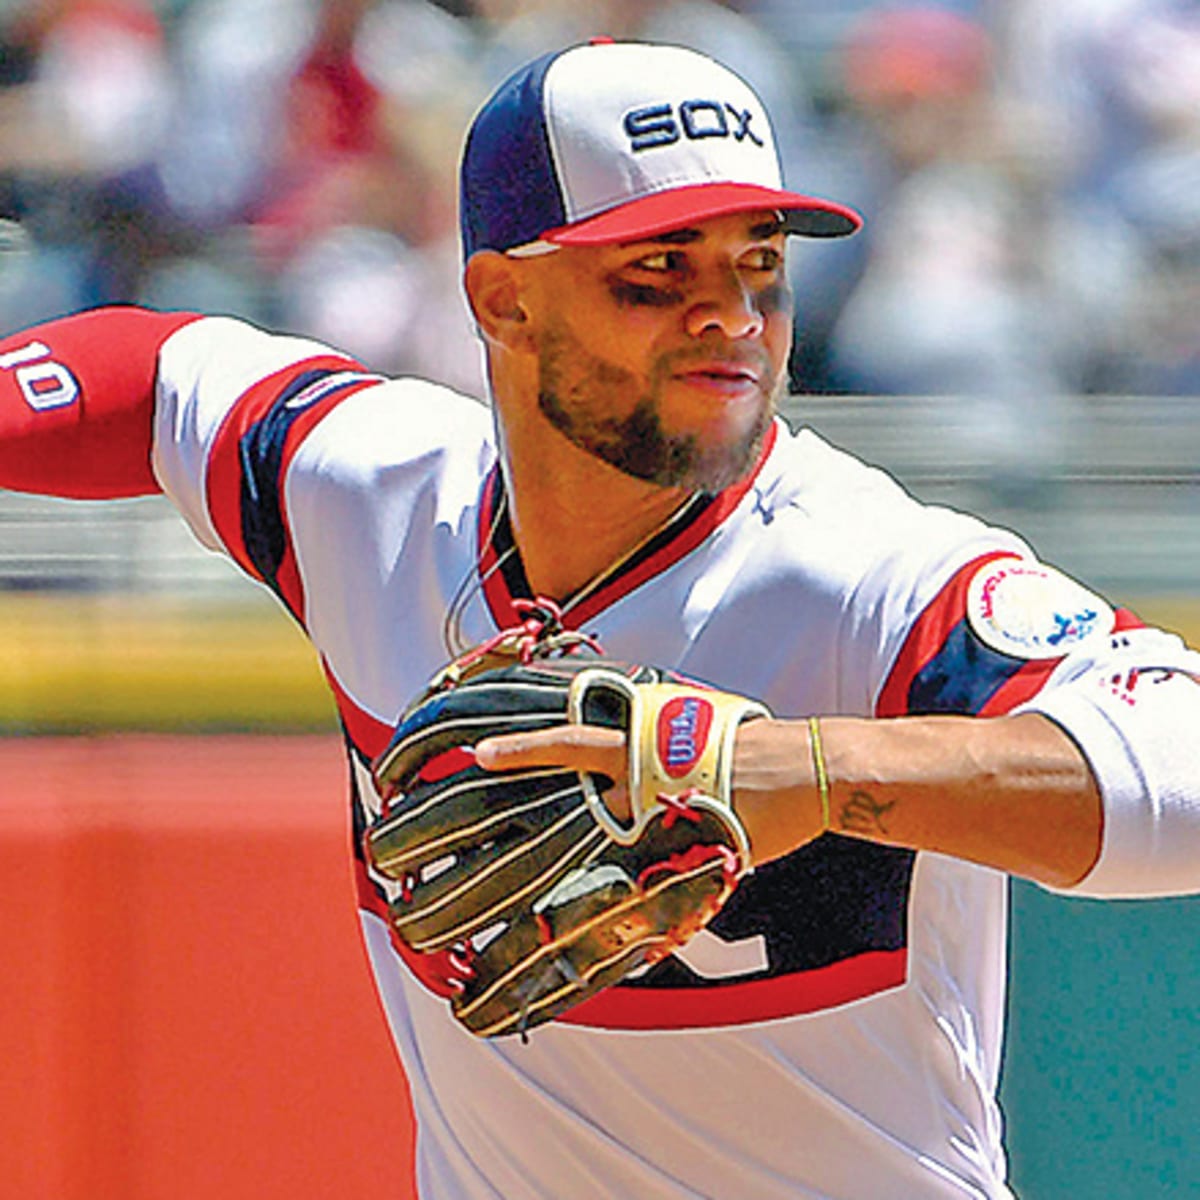 Eloy Jimenez injury shakes up fantasy baseball drafts